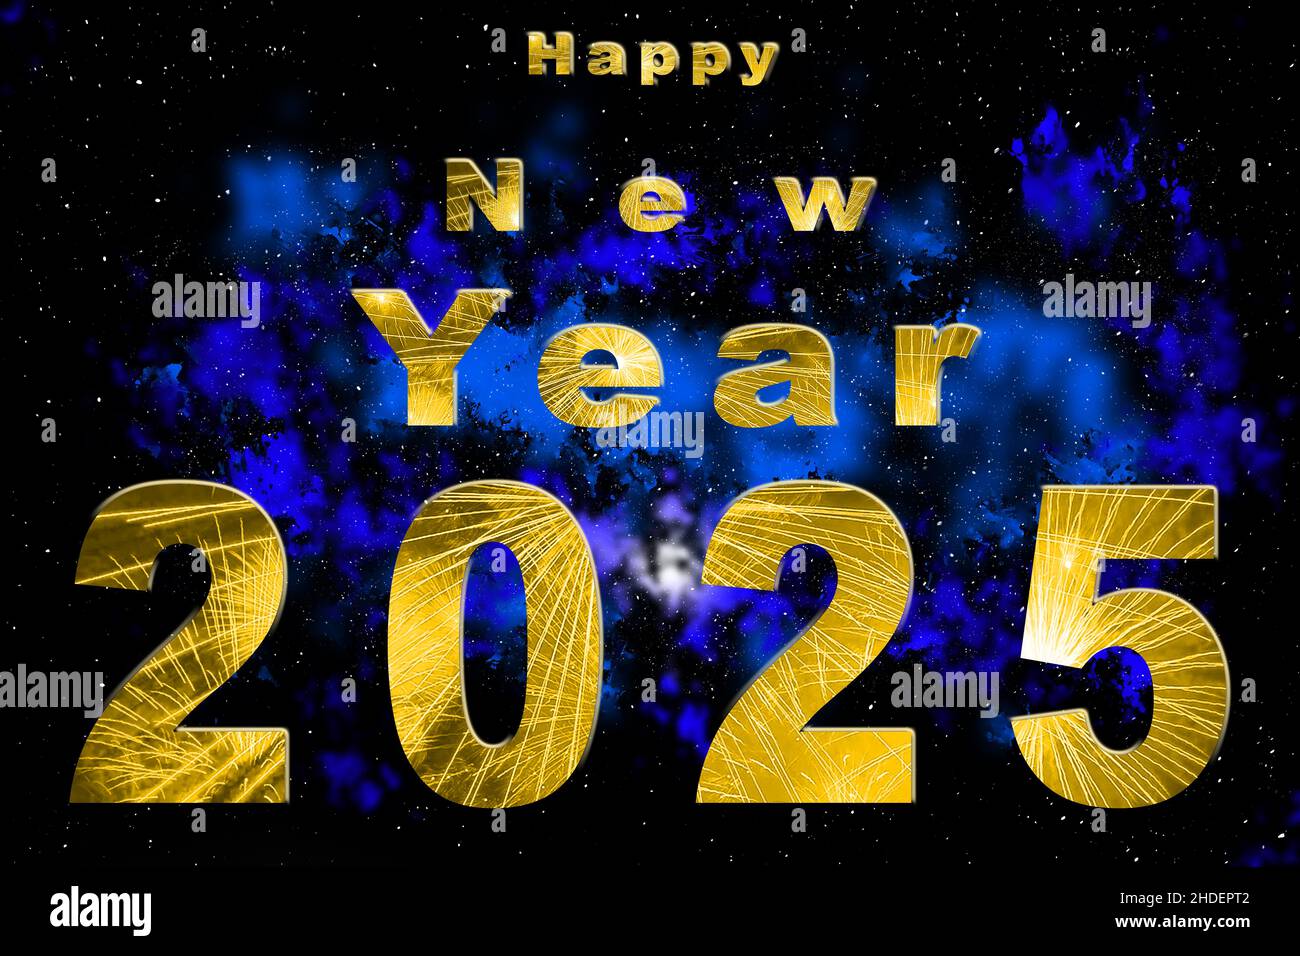 Happy New Year 2022 2023 2024 2025 Bavaria Germany Stock Photo